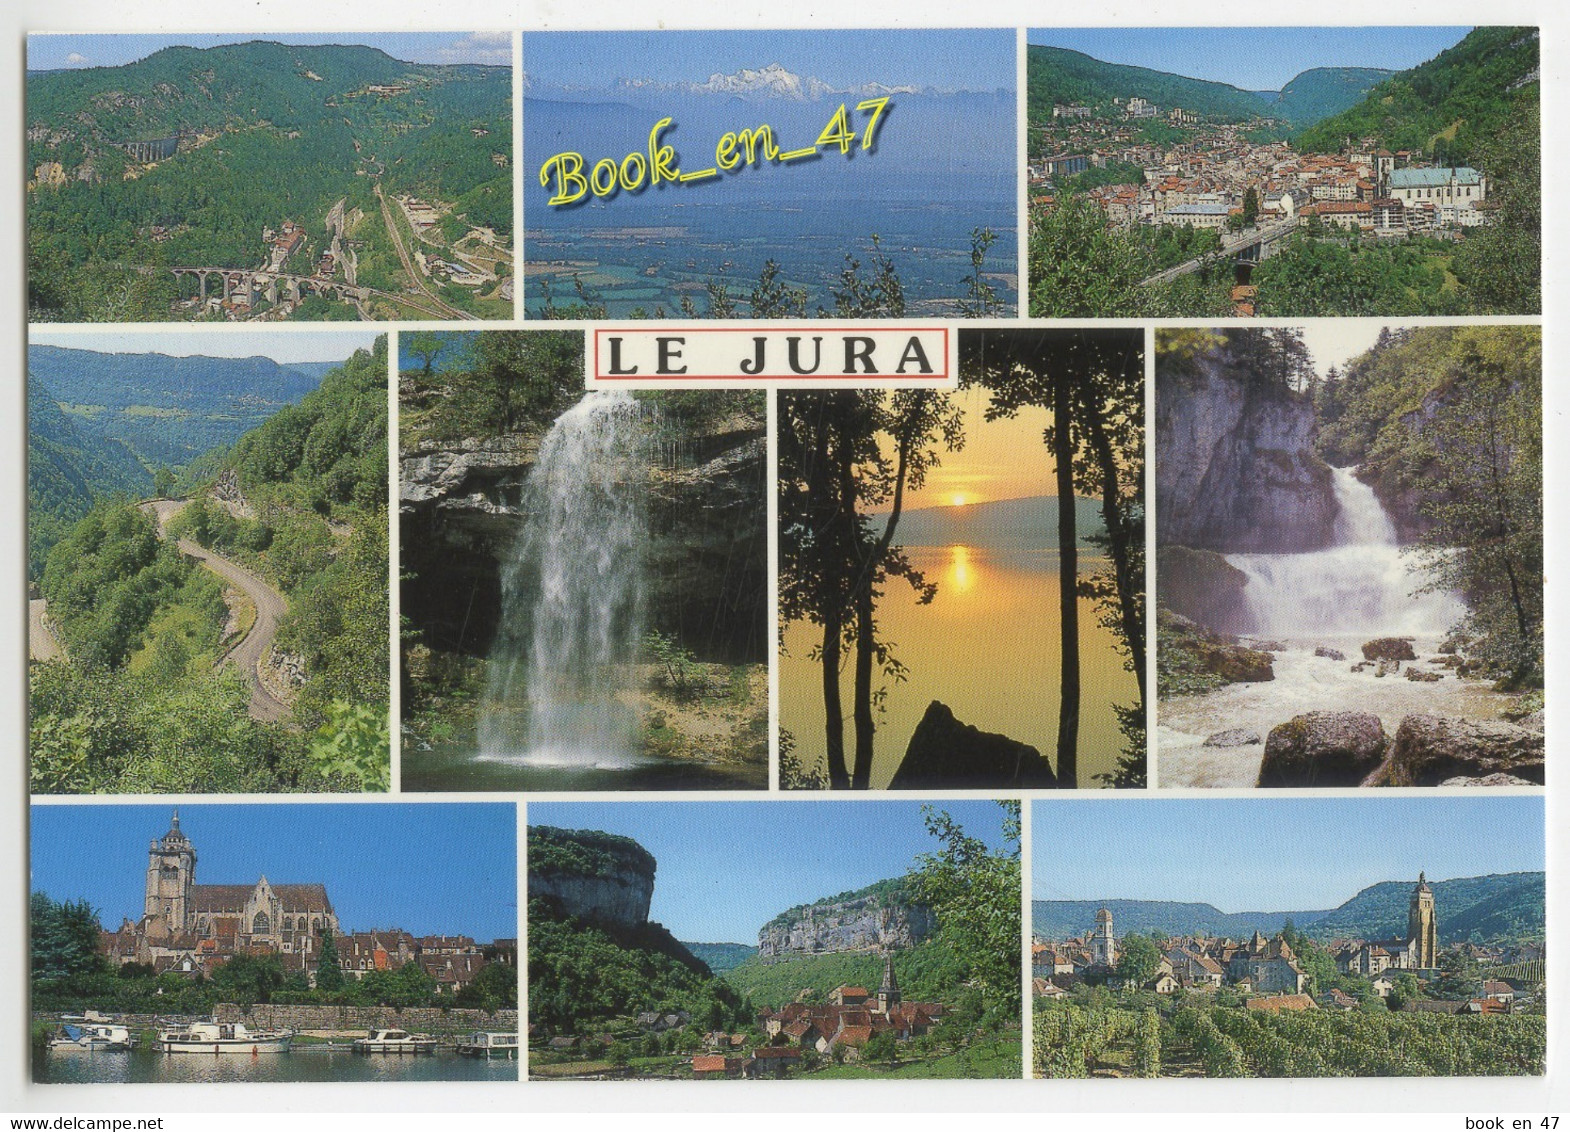 {86331} Le Jura , Multivues ; Dole , Baume Les Messieurs , Arbois , Saint Claude , Morez , Col De La Faucille - Franche-Comté